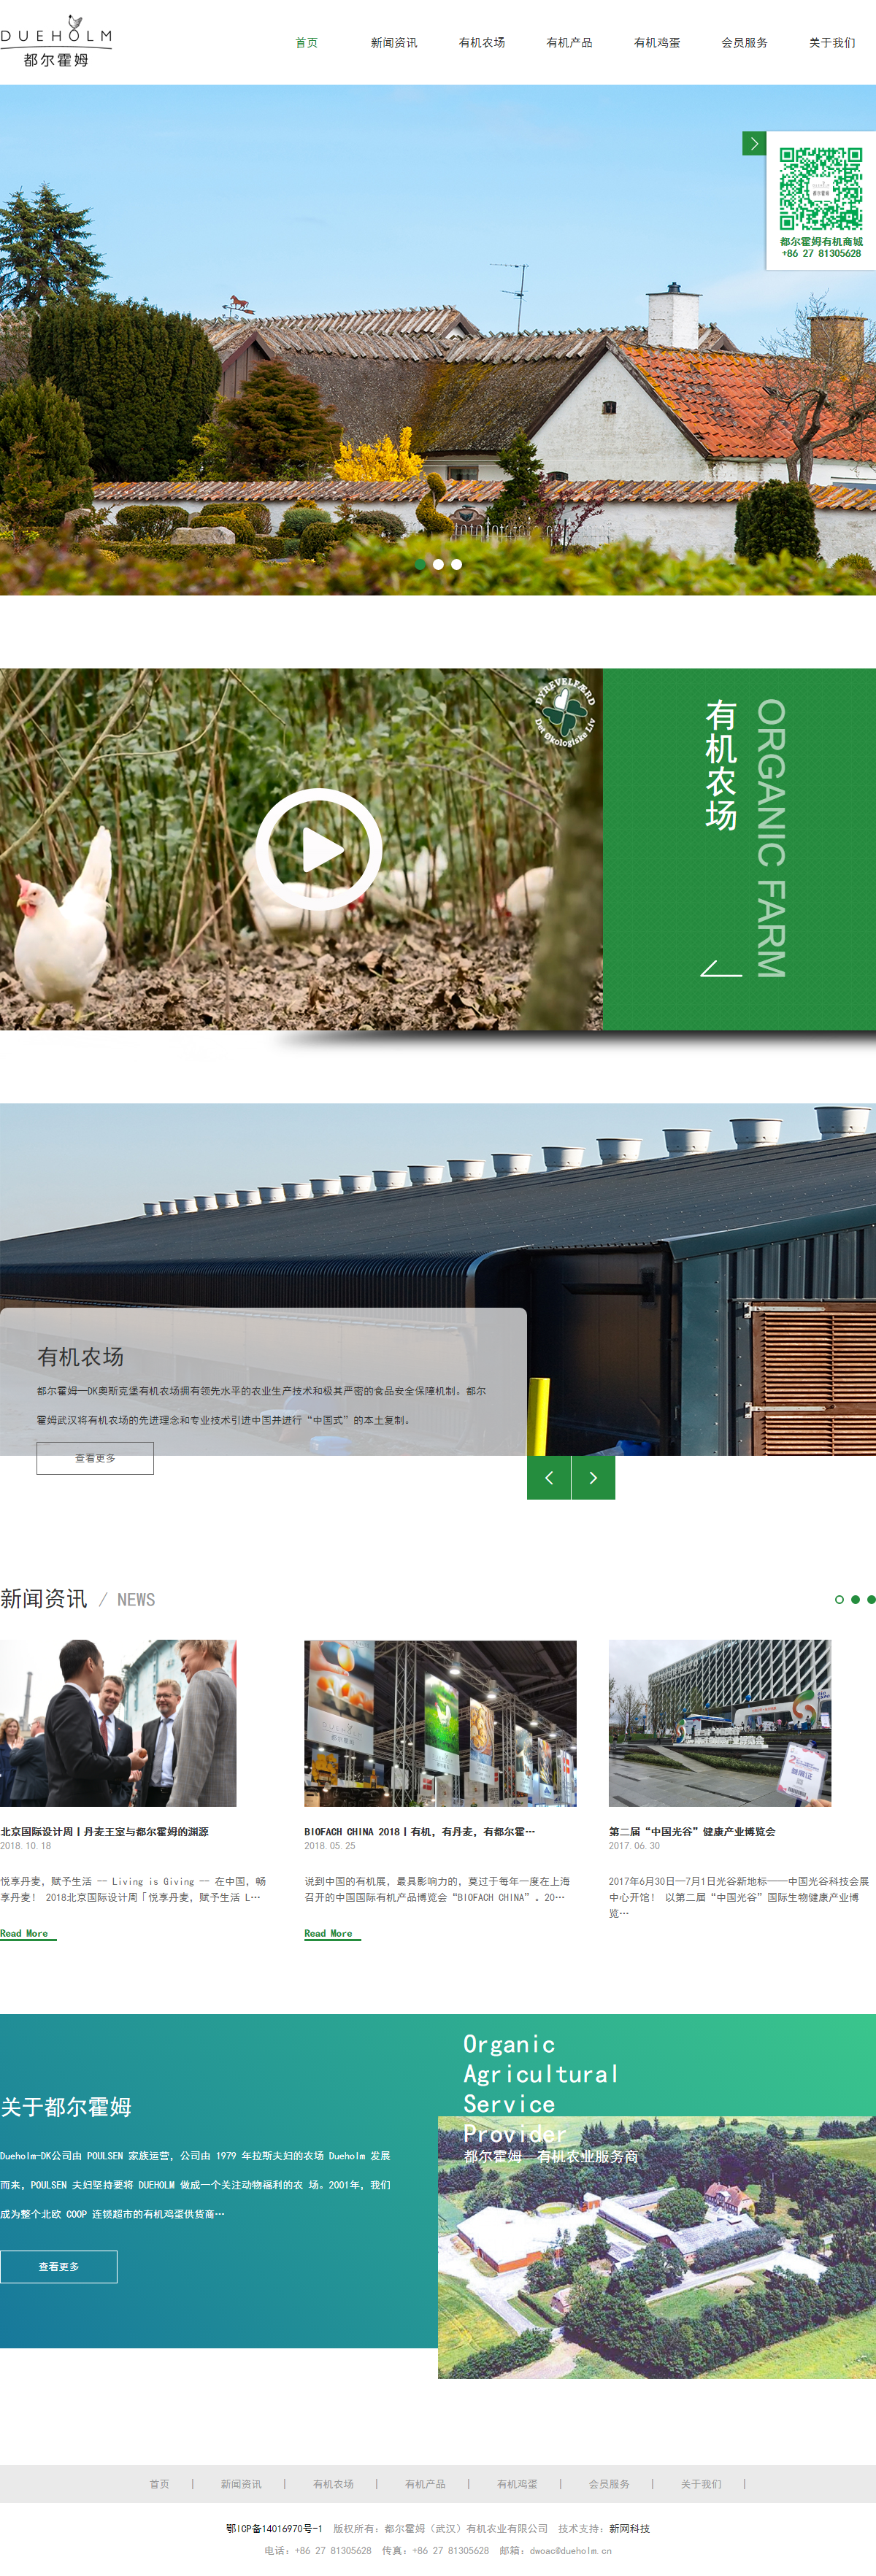 都尔霍姆（武汉）有机农业有限公司网站案例